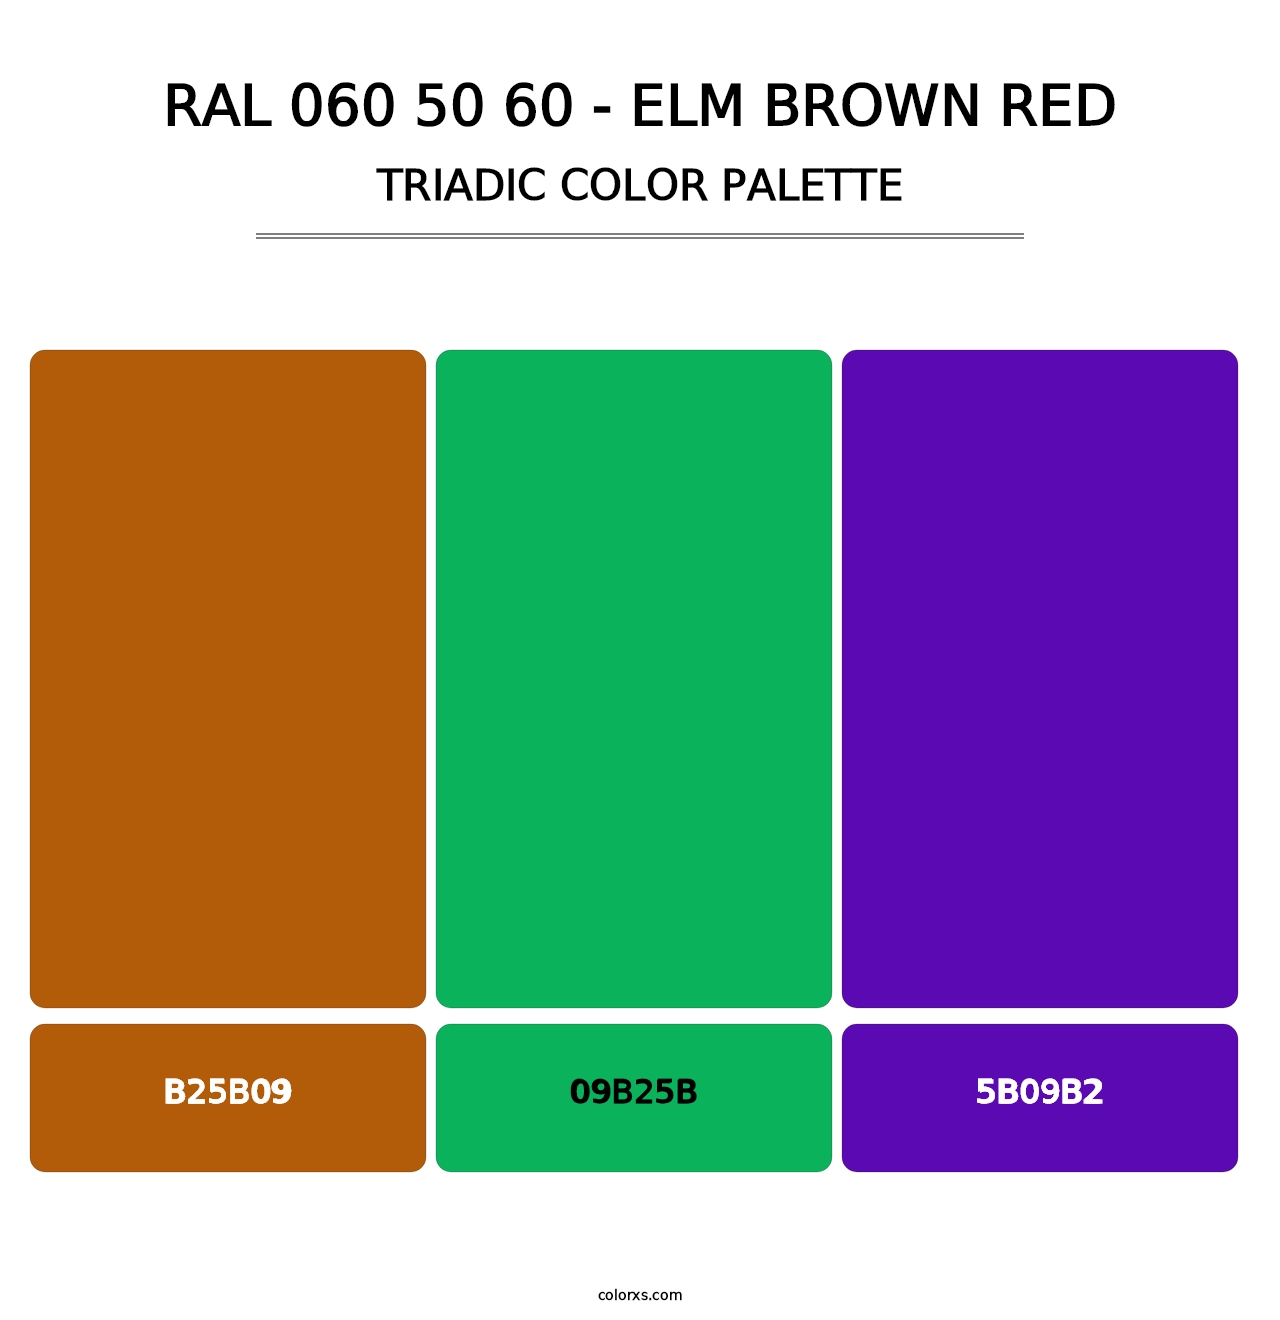 RAL 060 50 60 - Elm Brown Red - Triadic Color Palette